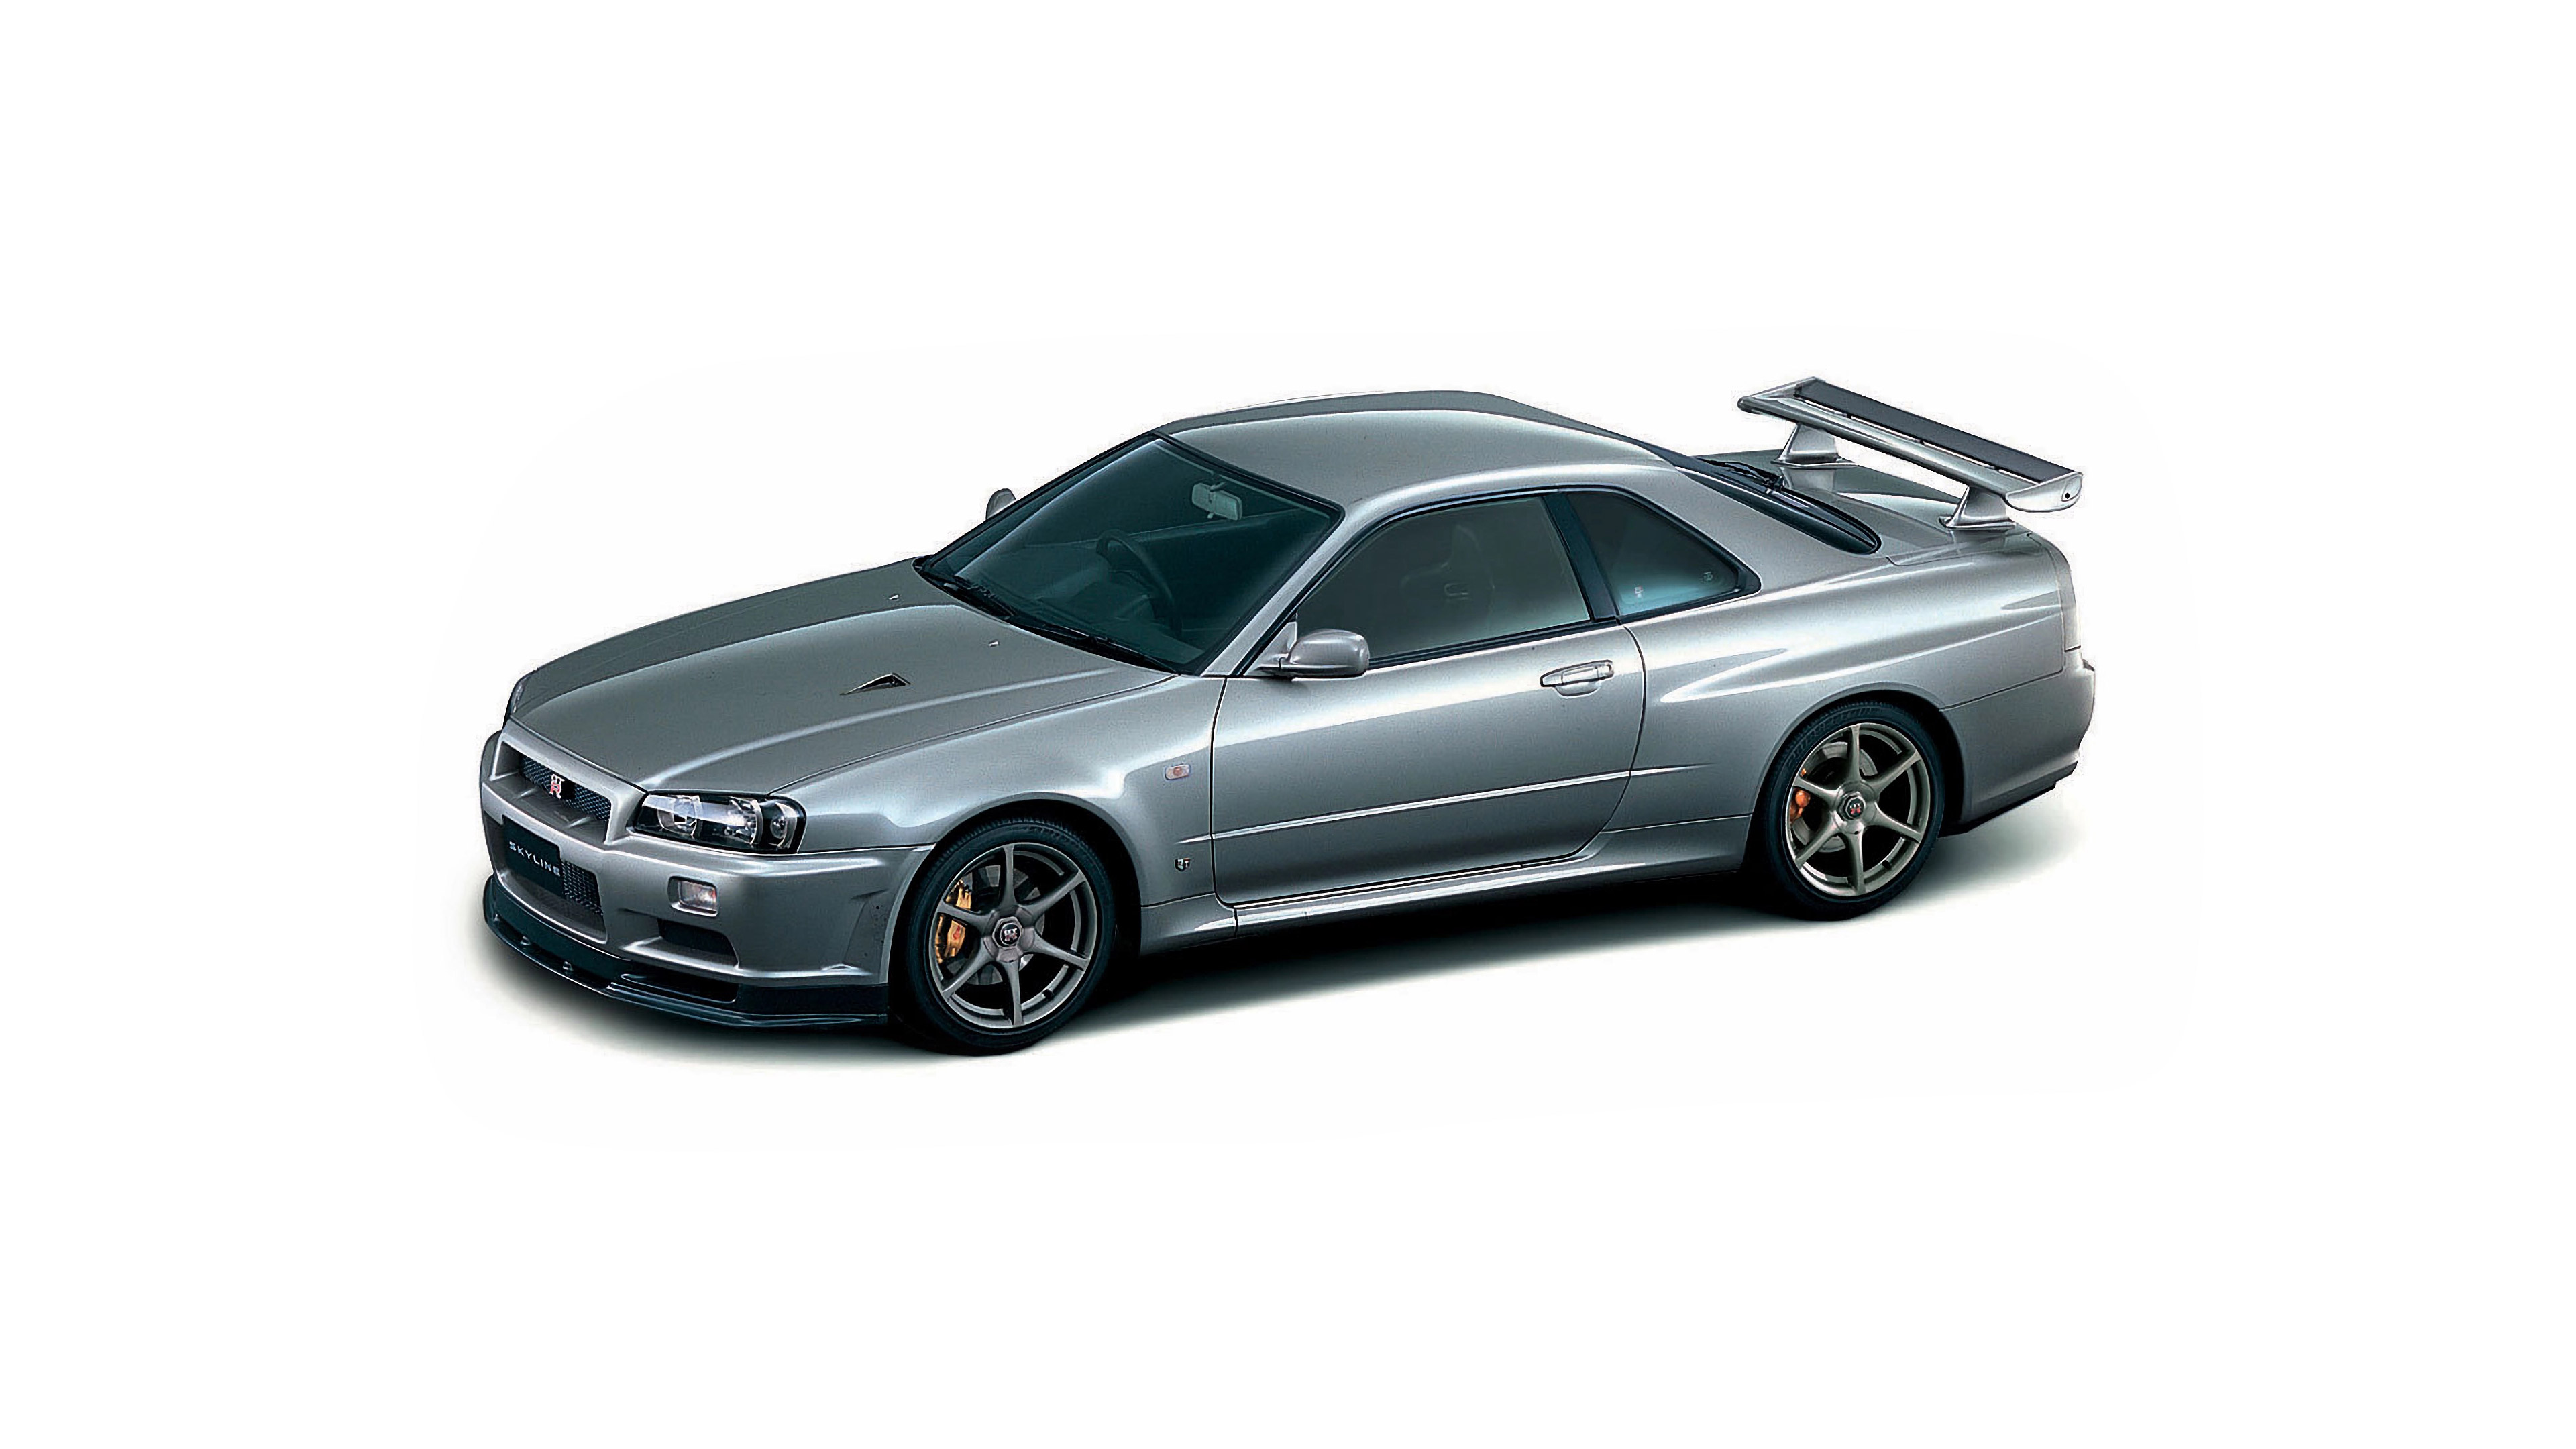  1999 Nissan Skyline GT-R V-spec Wallpaper.